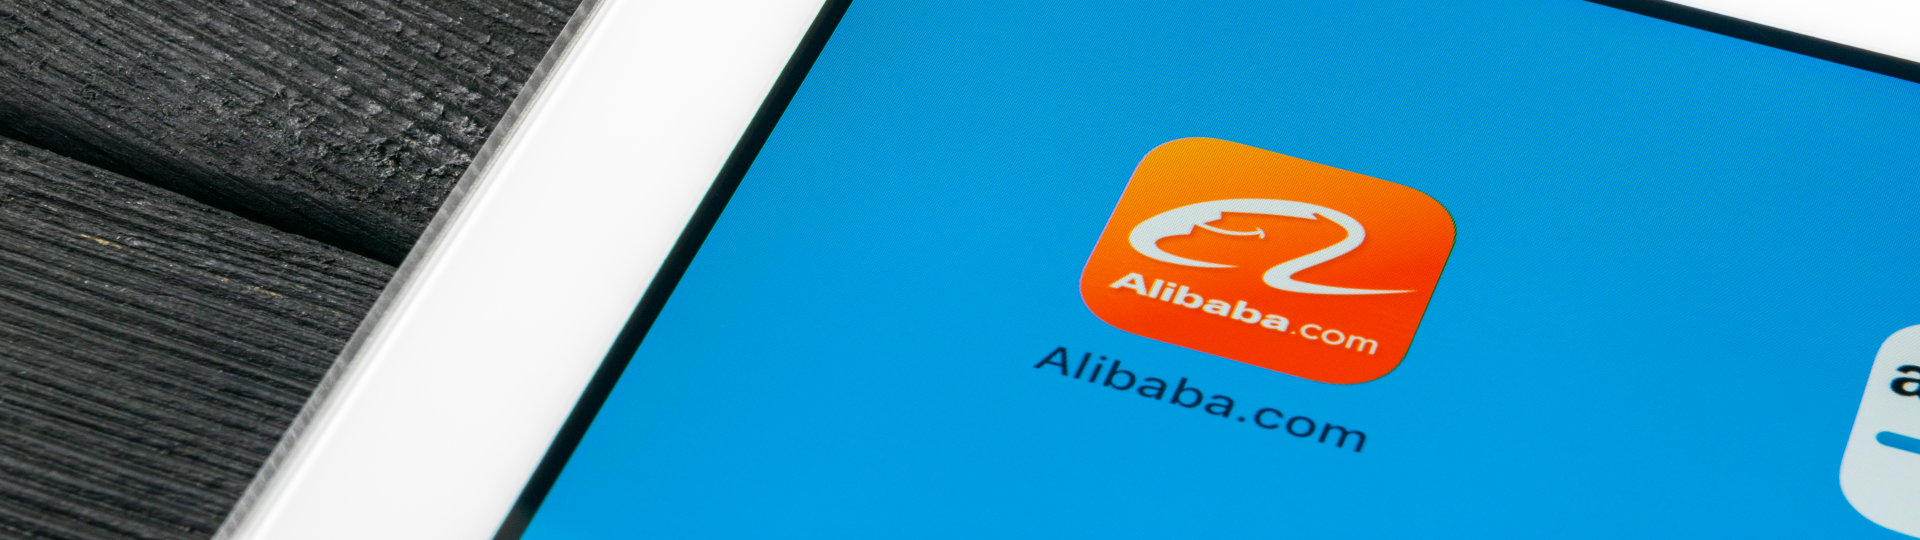 Alibaba roste jako startup. Tržby se zvýšily o 61 procent